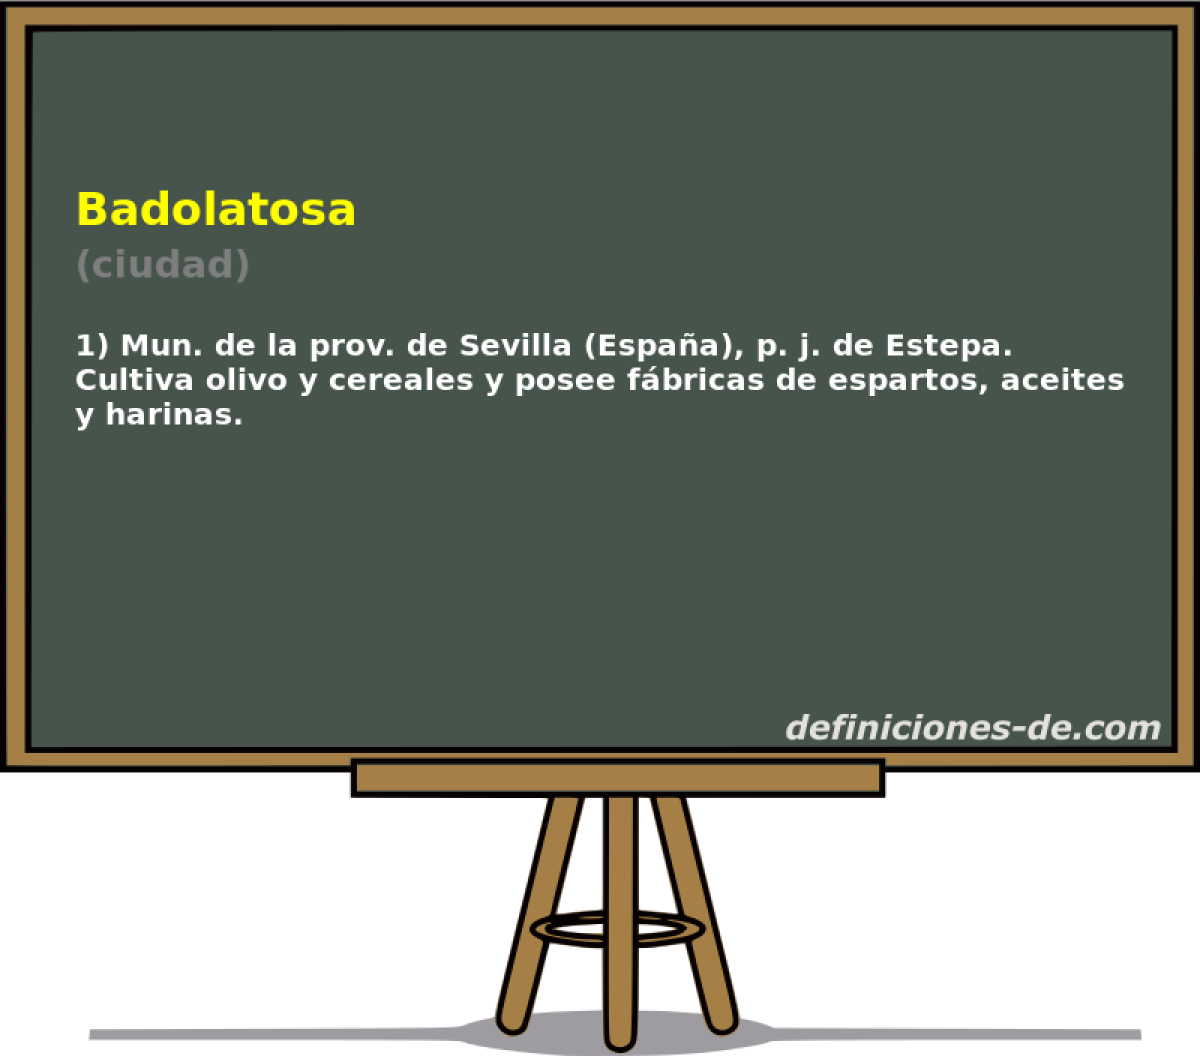 Badolatosa (ciudad)